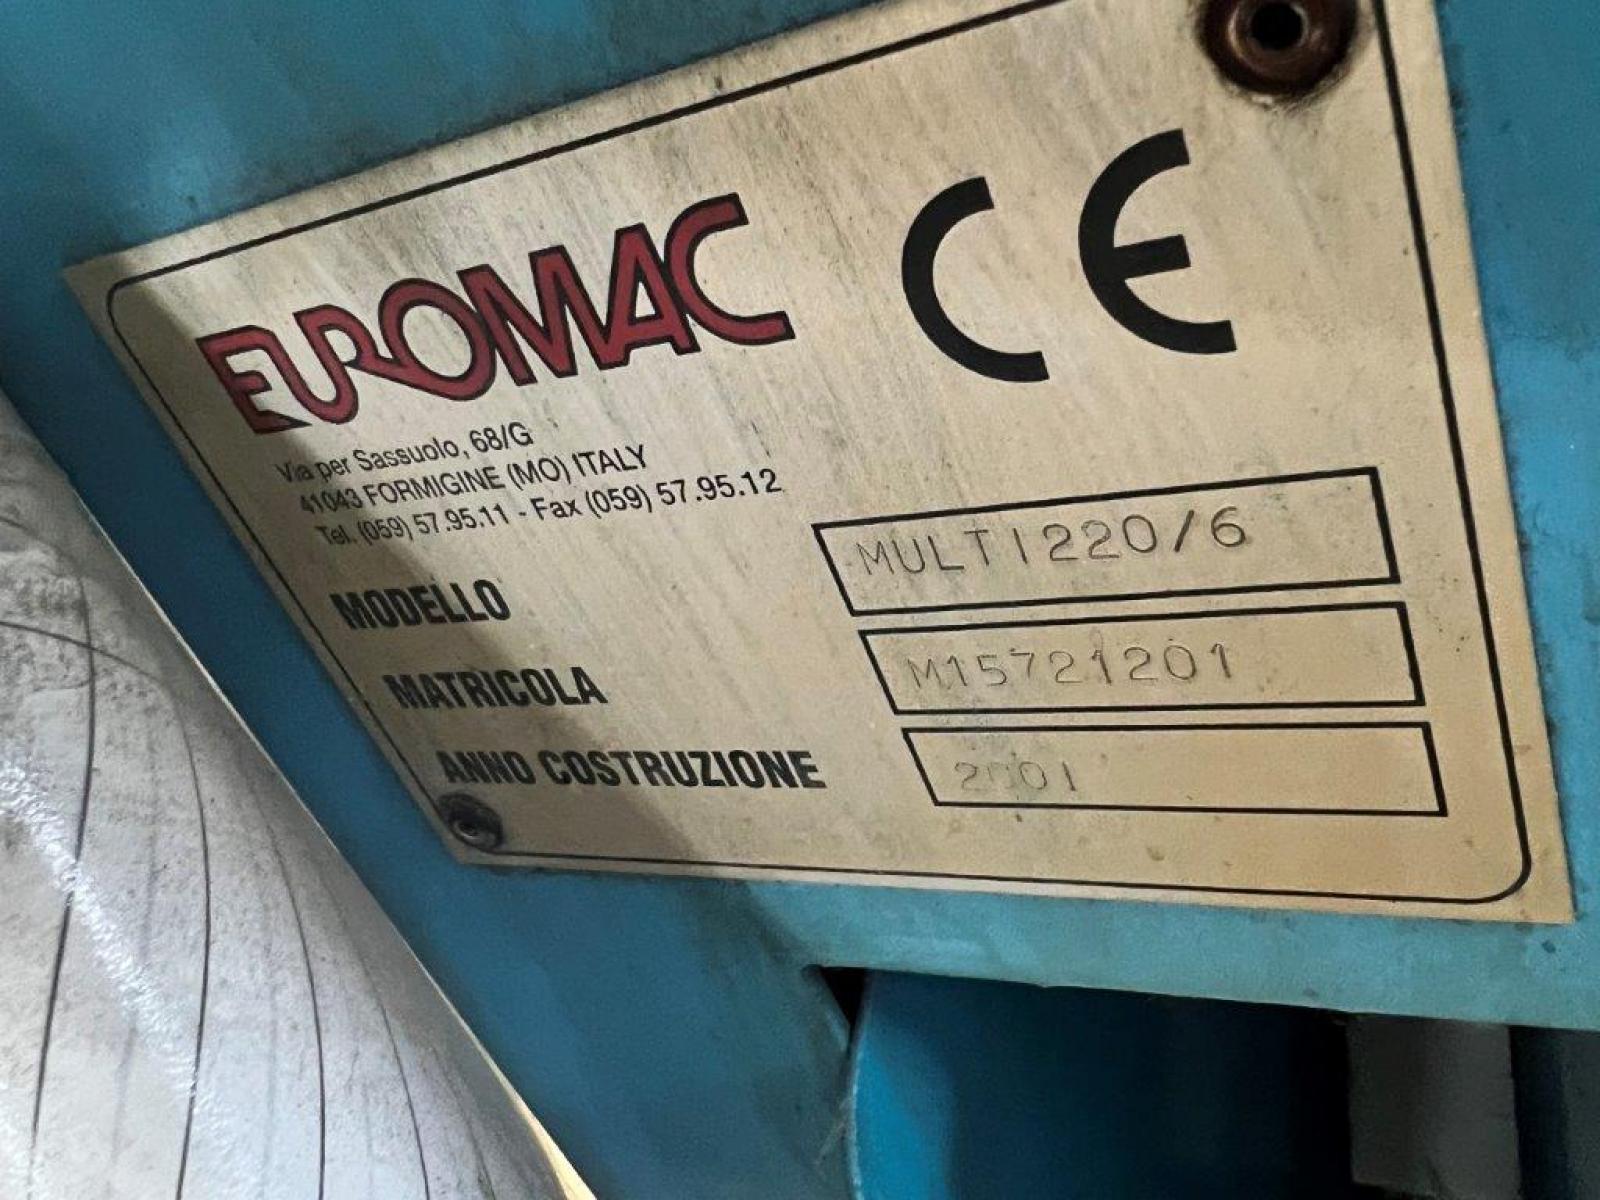 scantonatrice ad angolo variabile euromac multi 220/6mm con punzonatura  anno 2001